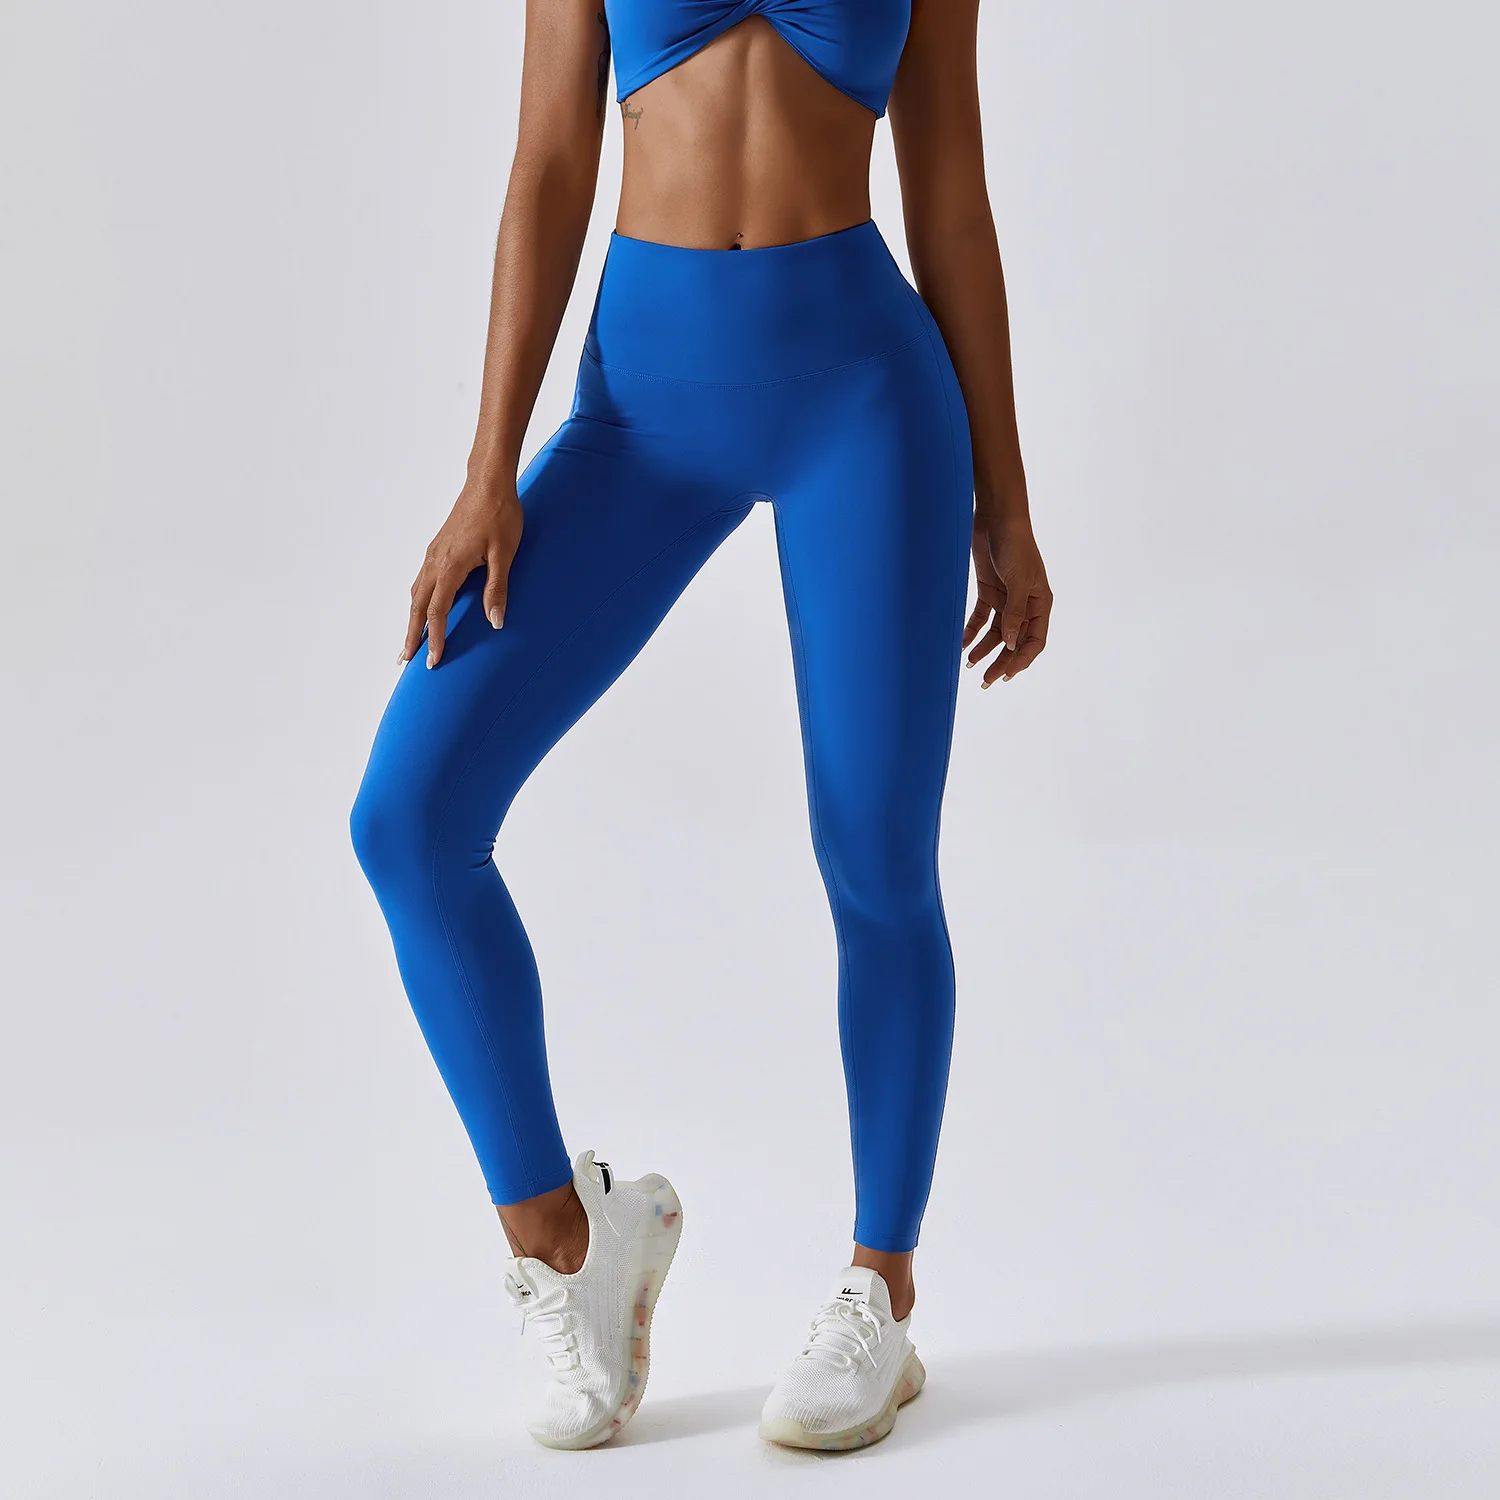 Women's Yoga Pants High Waisted Workout/Yoga/Dance/Gym/Racing